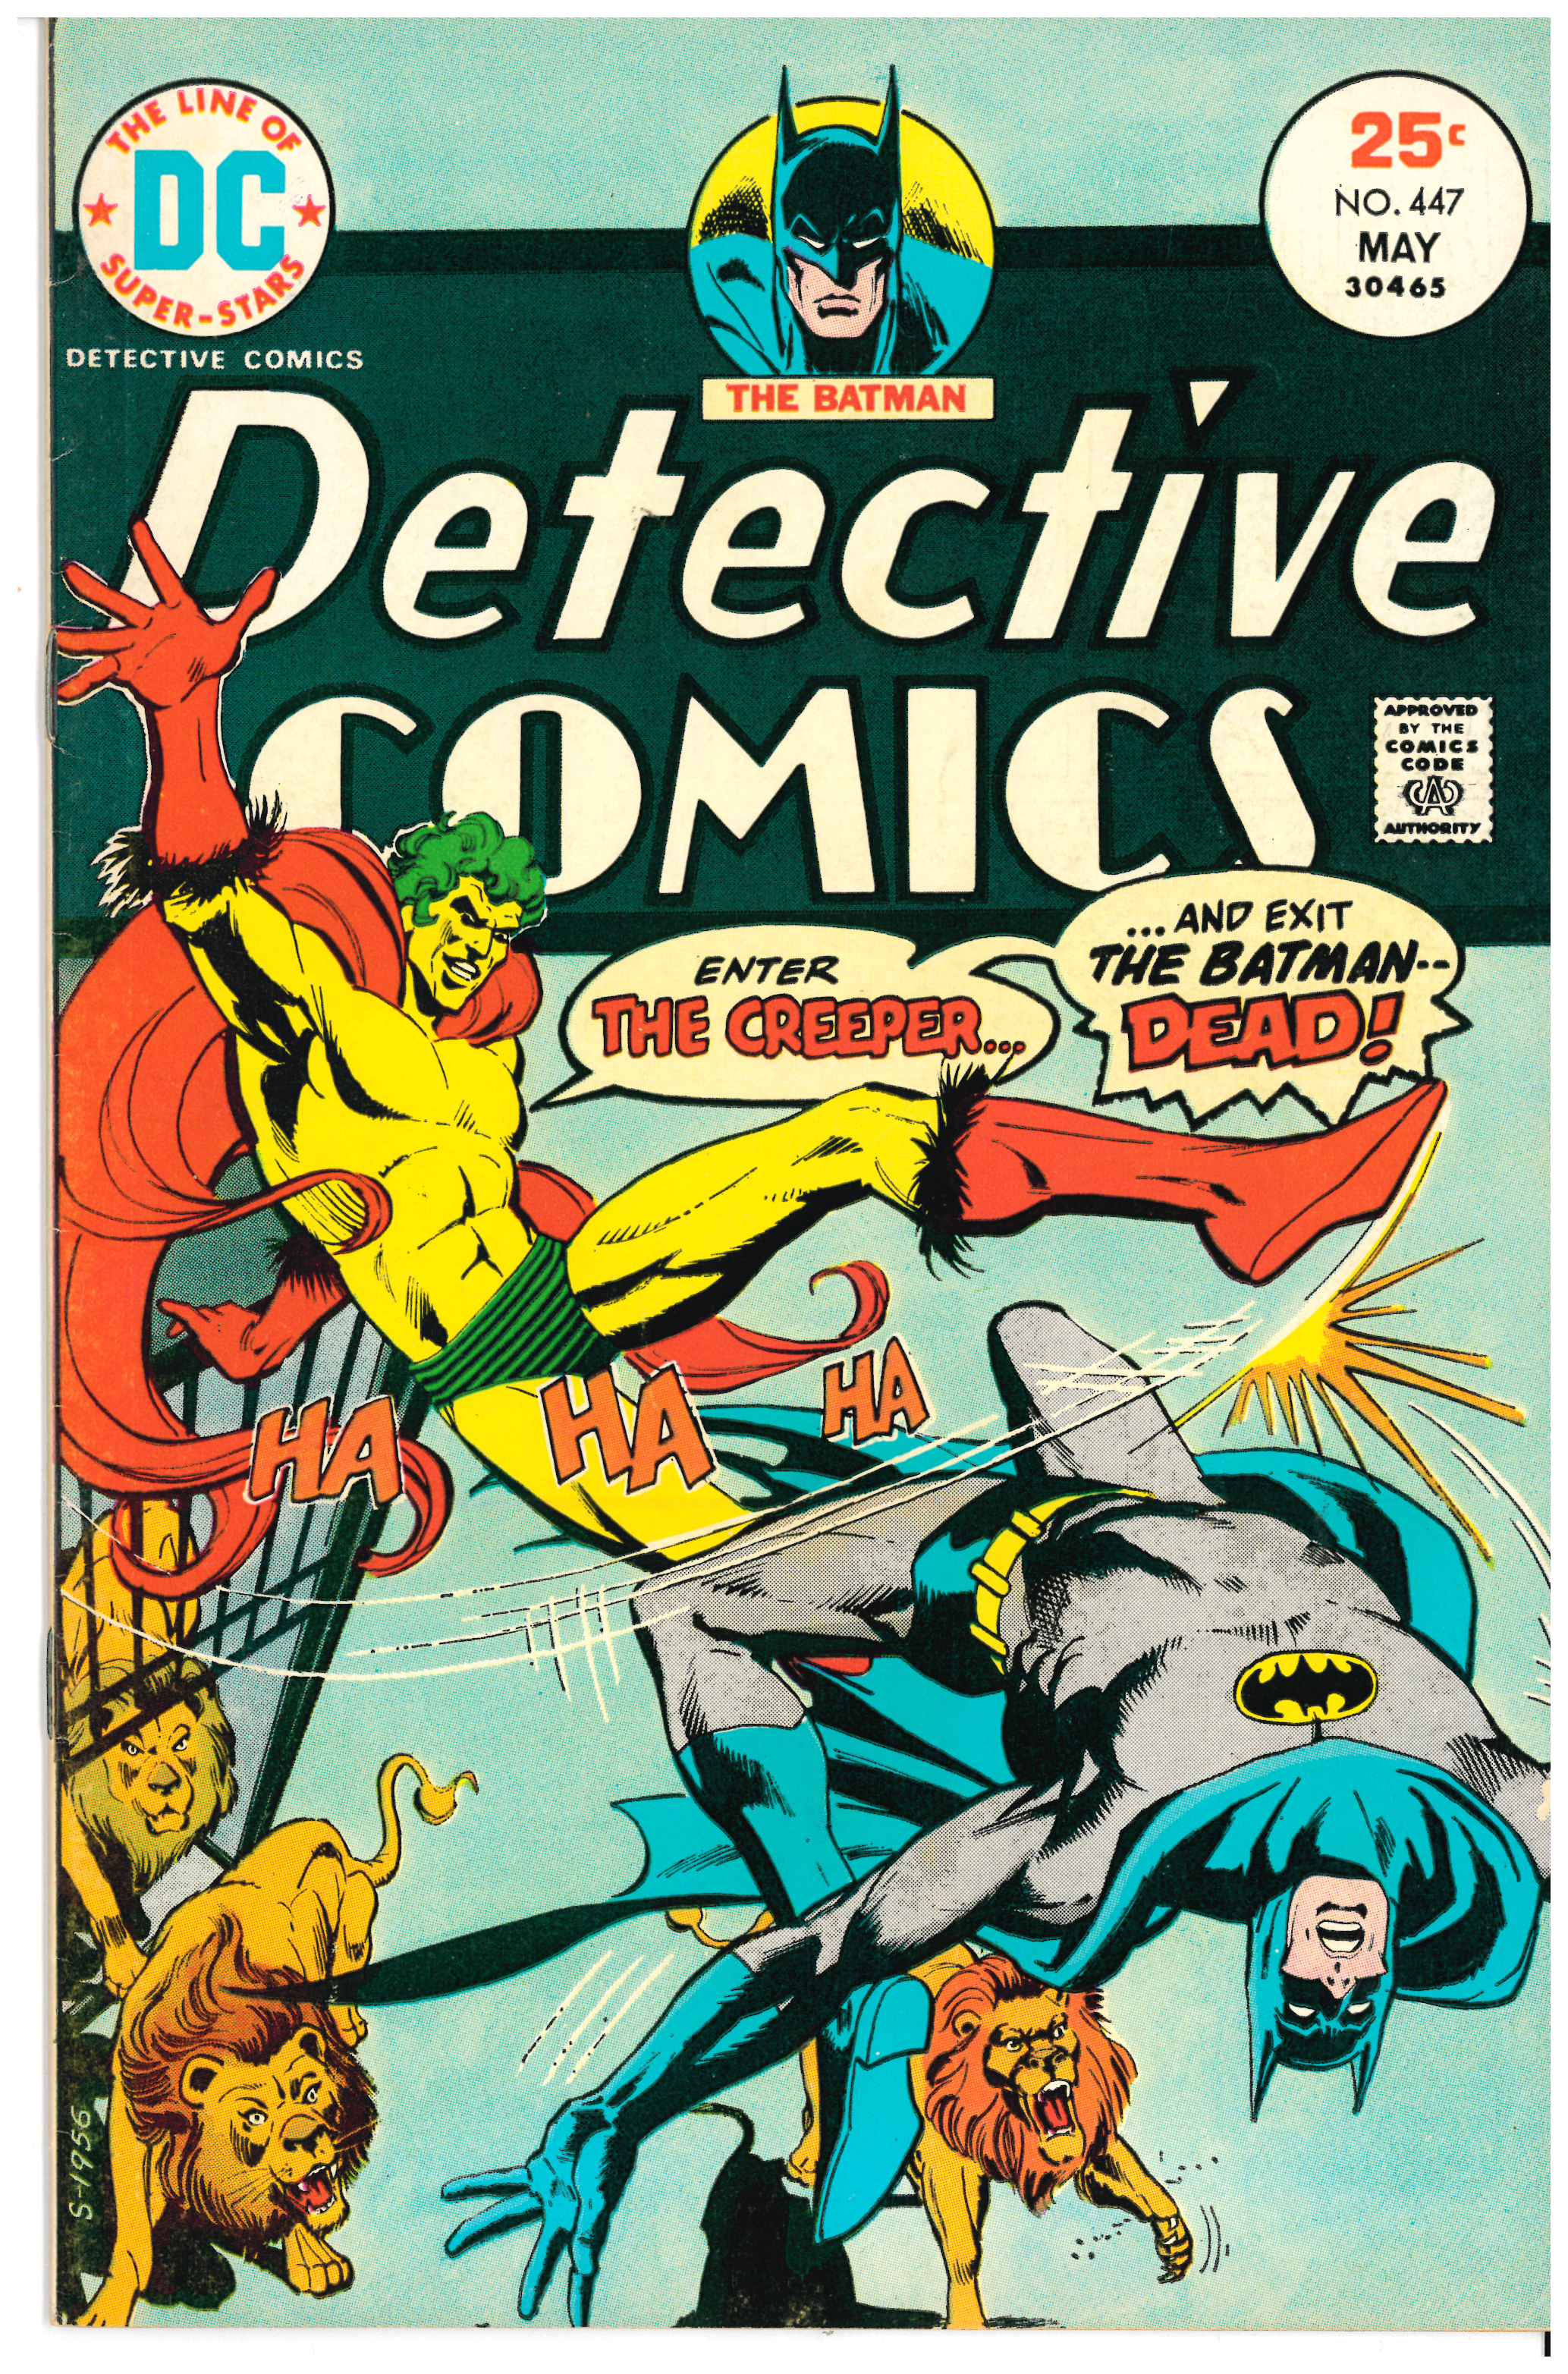 Detective Comics #447